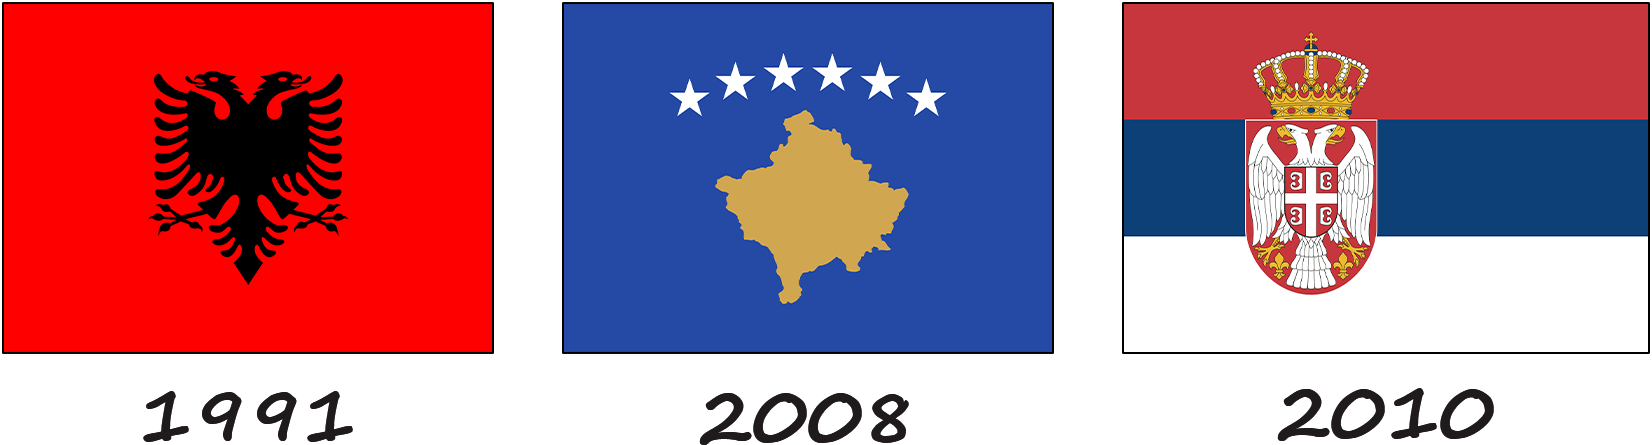 Historia de la bandera de Kosovo